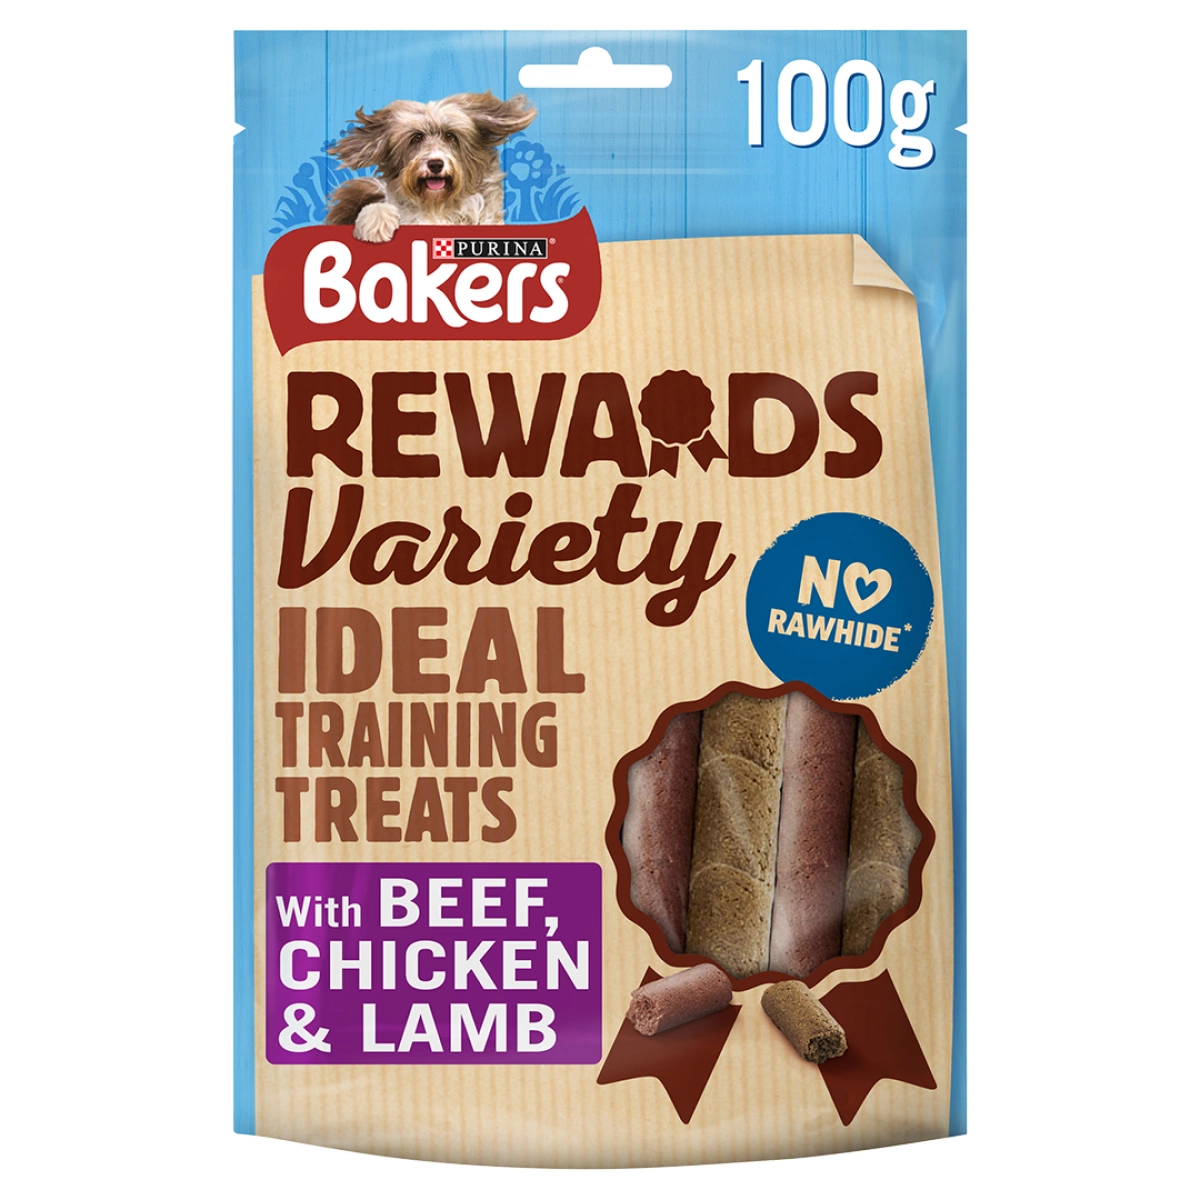 Bakers Rewards Variety 100g Main Image